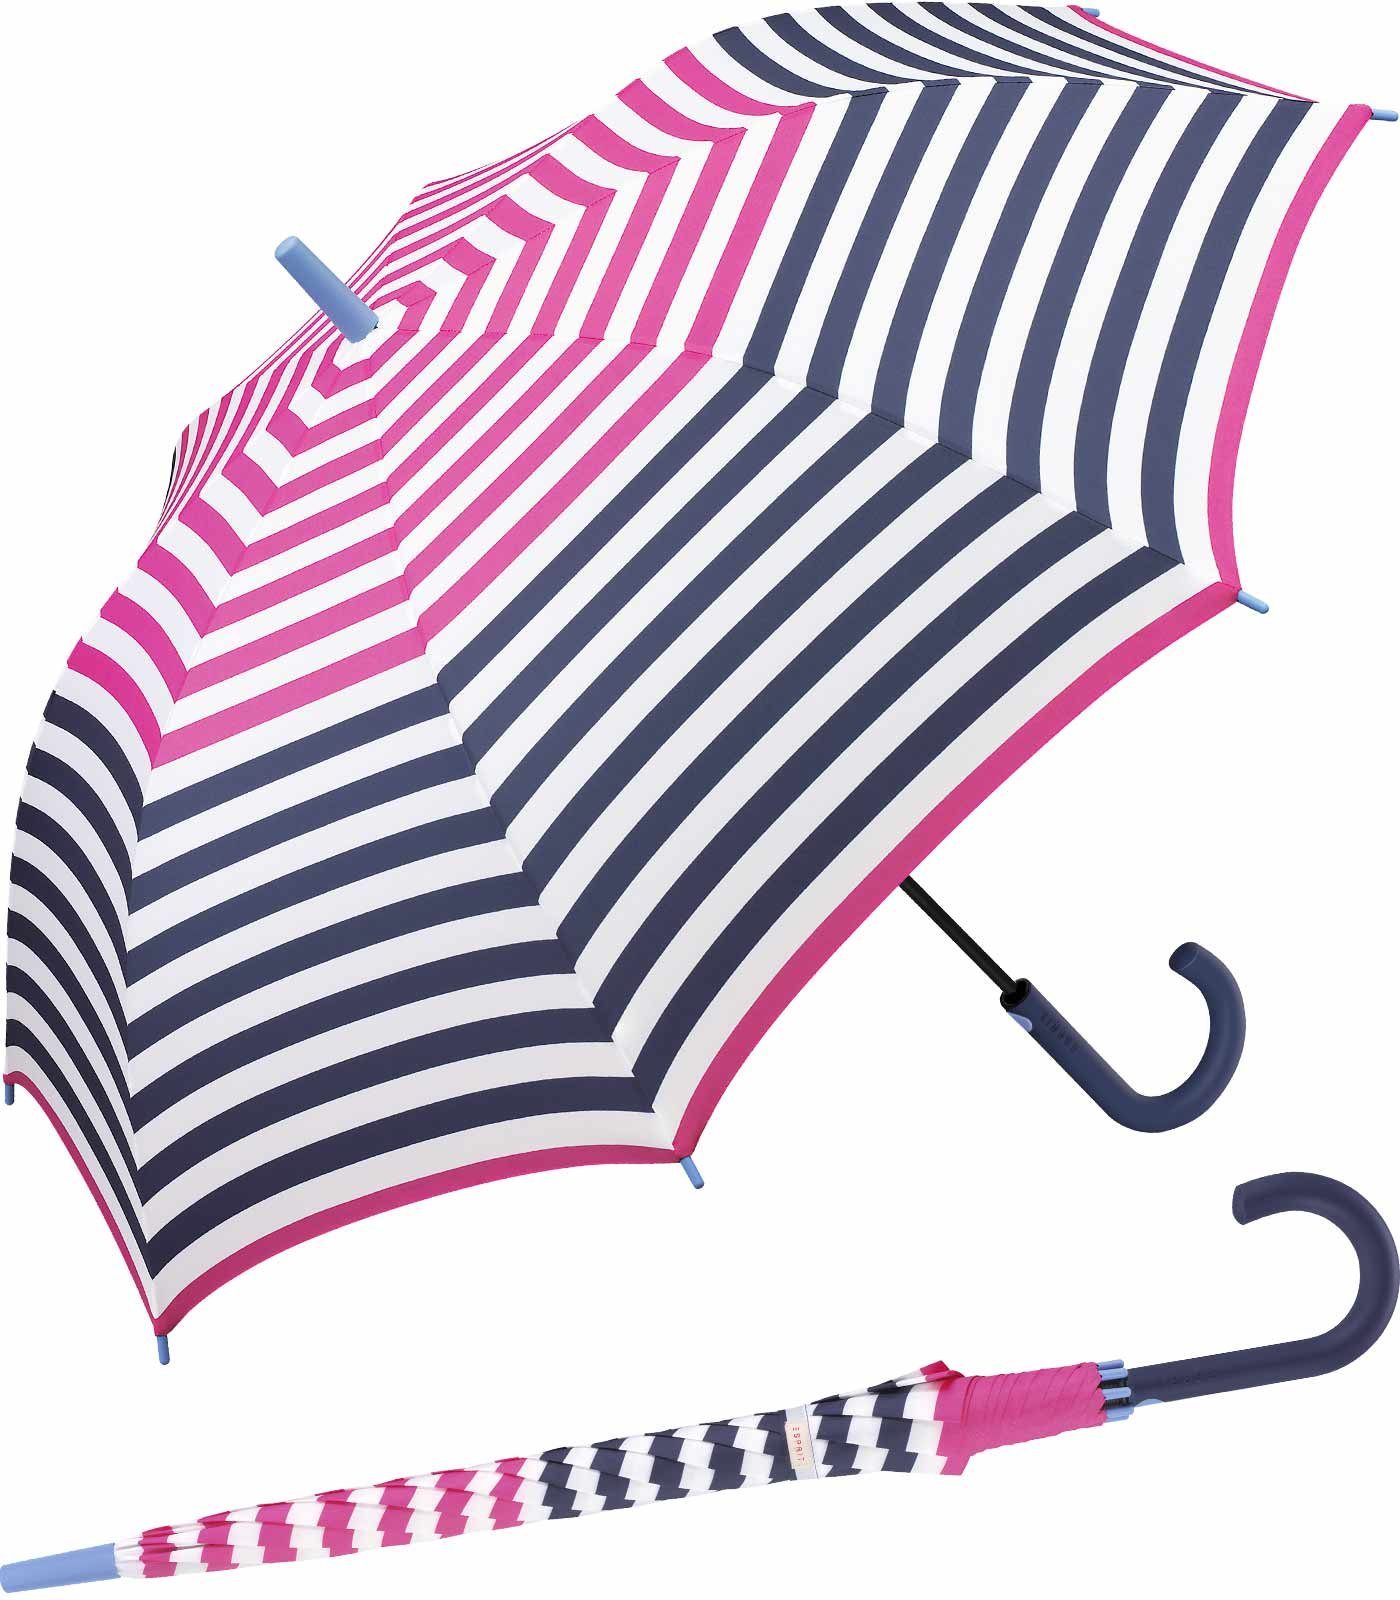 Esprit Langregenschirm großer Regenschirm für Damen mit Auf-Automatik, mit jugendlichem Streifenmuster - pink-navy